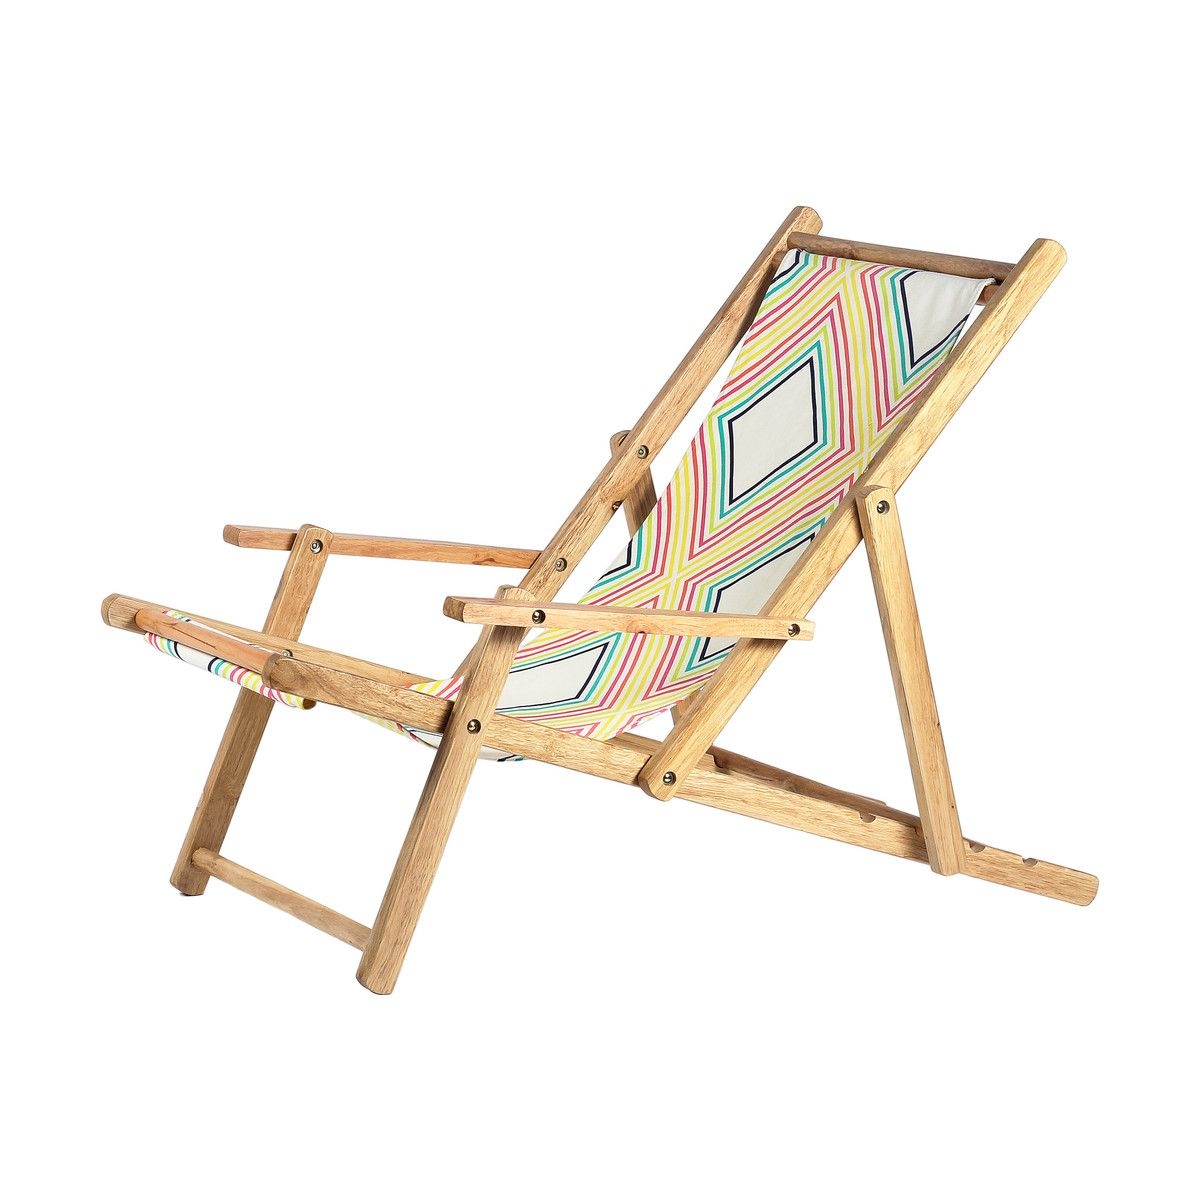 Cute beach chairs